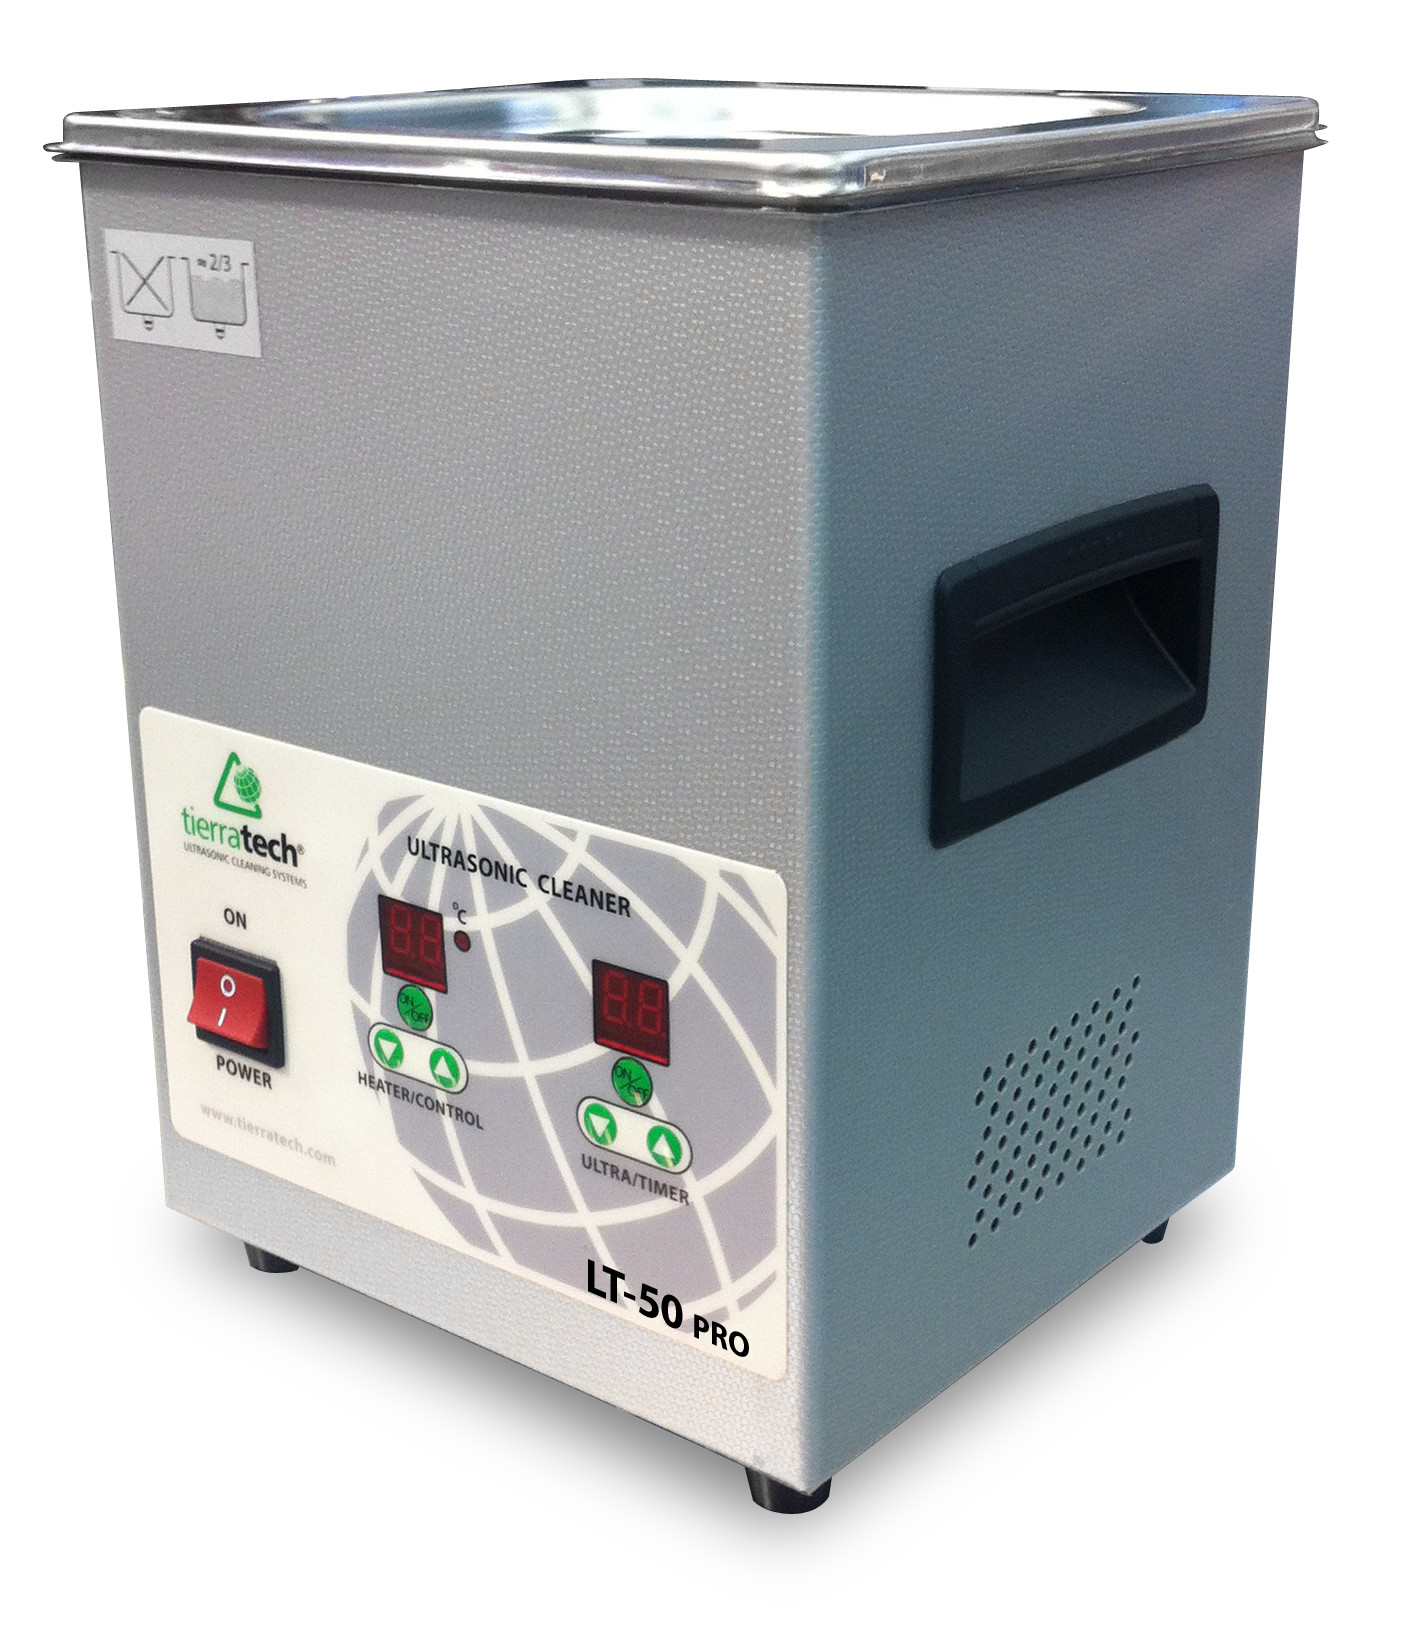 Más información acerca de la máquina de limpieza por ultrasonido LT-50 PRO